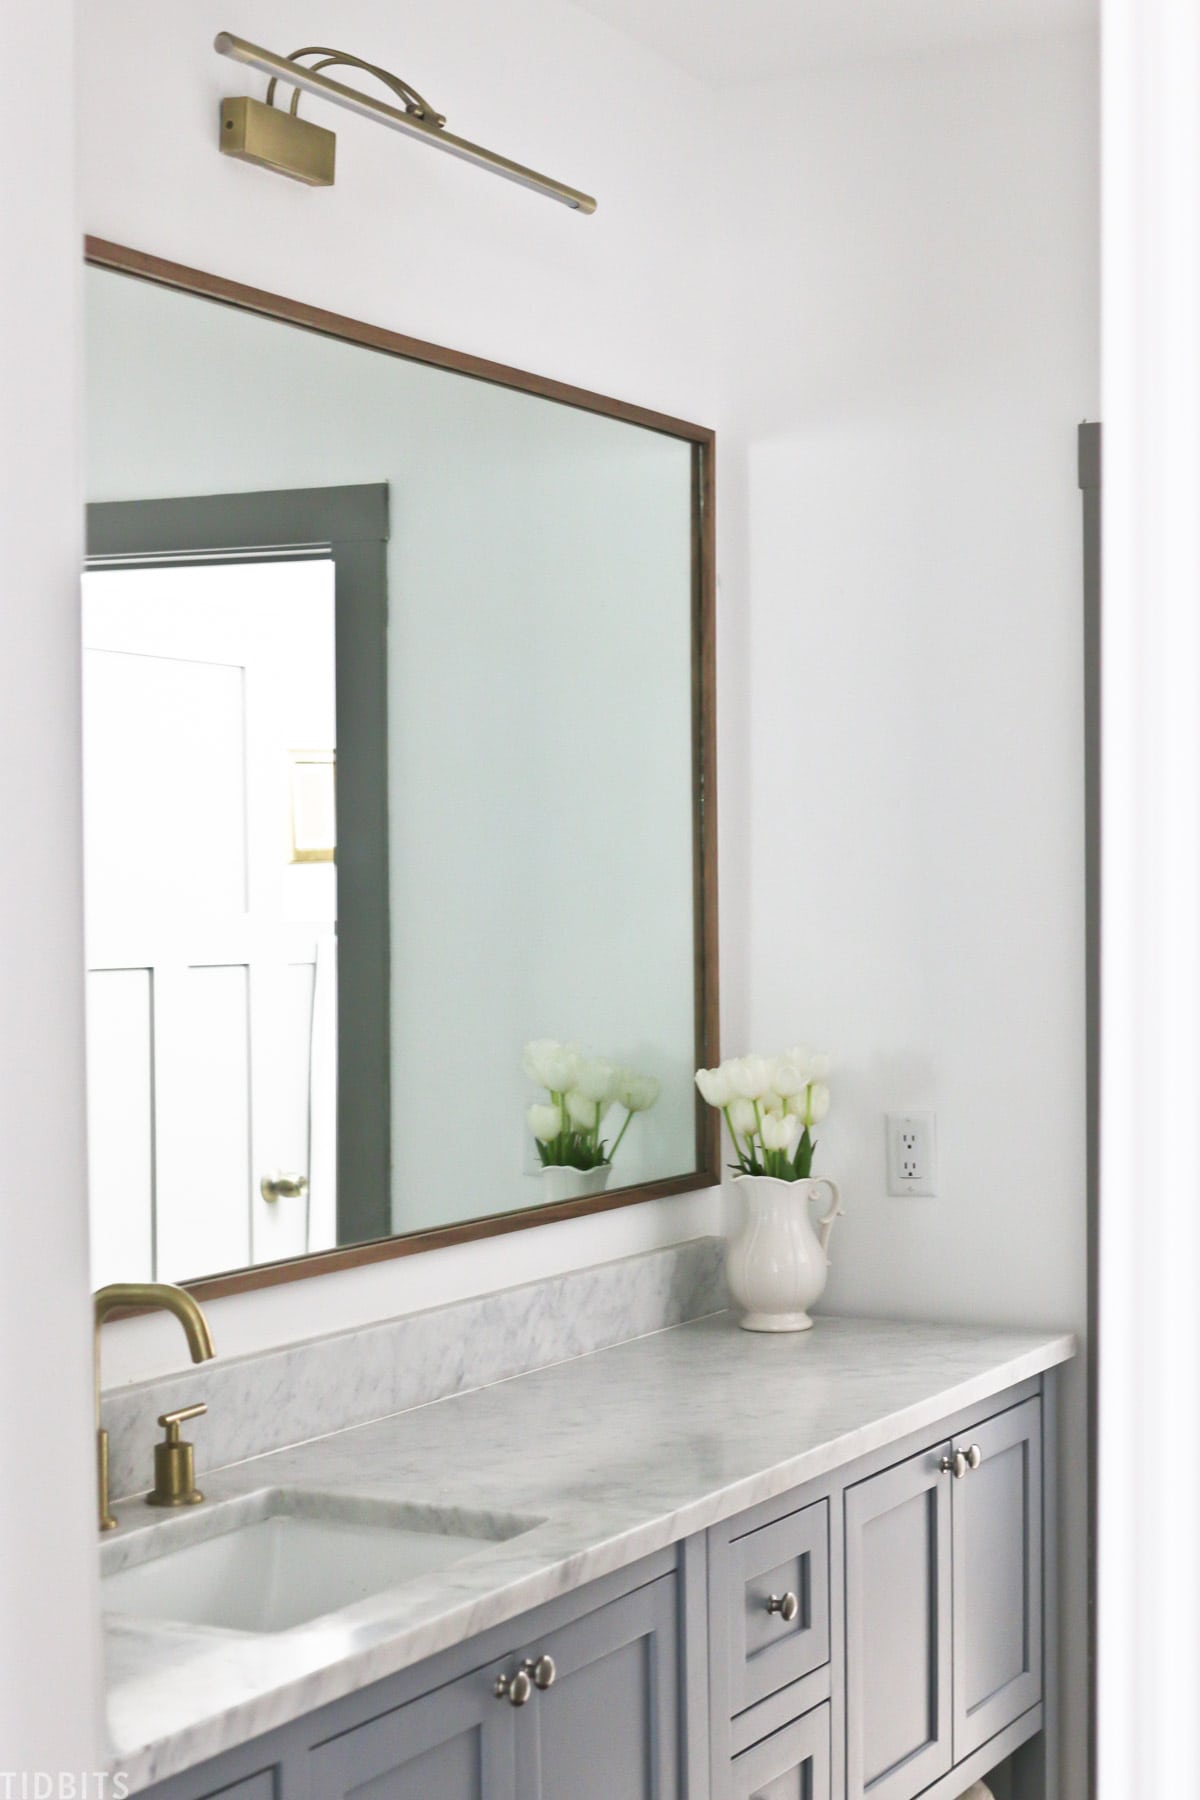 Diy Wood Mirror Frame For Bathroom, Framed Bathroom Mirrors Diy